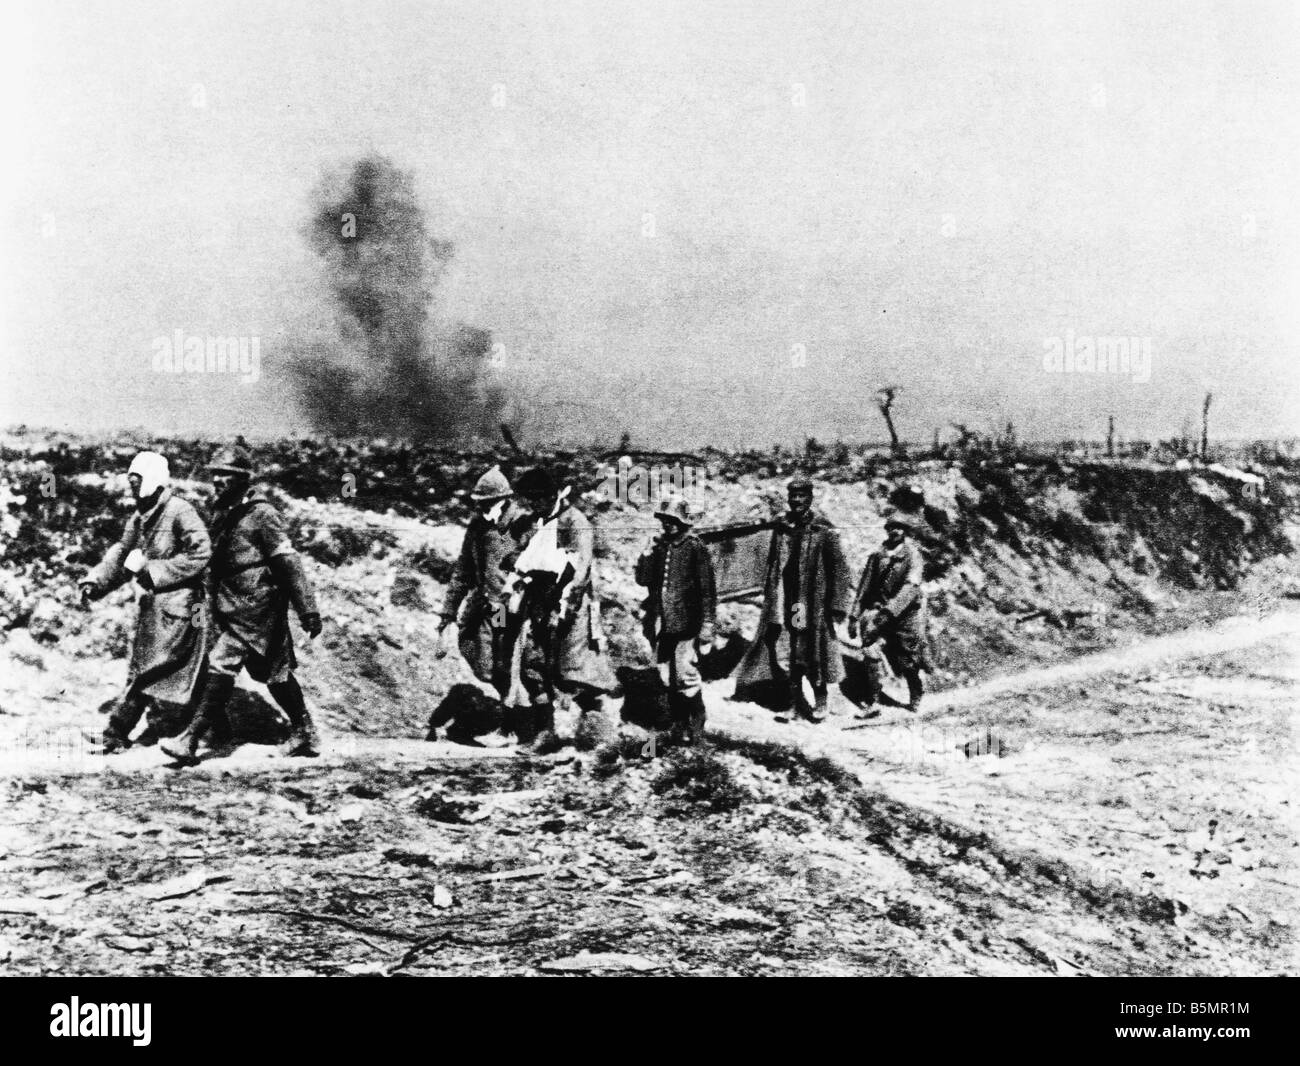 9 1916 925 A1 E la somme photo 1916 prisonniers de guerre allemands WWI 1914 Western Front 18 Bataille de la Somme 23 Juin 26 novembre 1916 French Banque D'Images